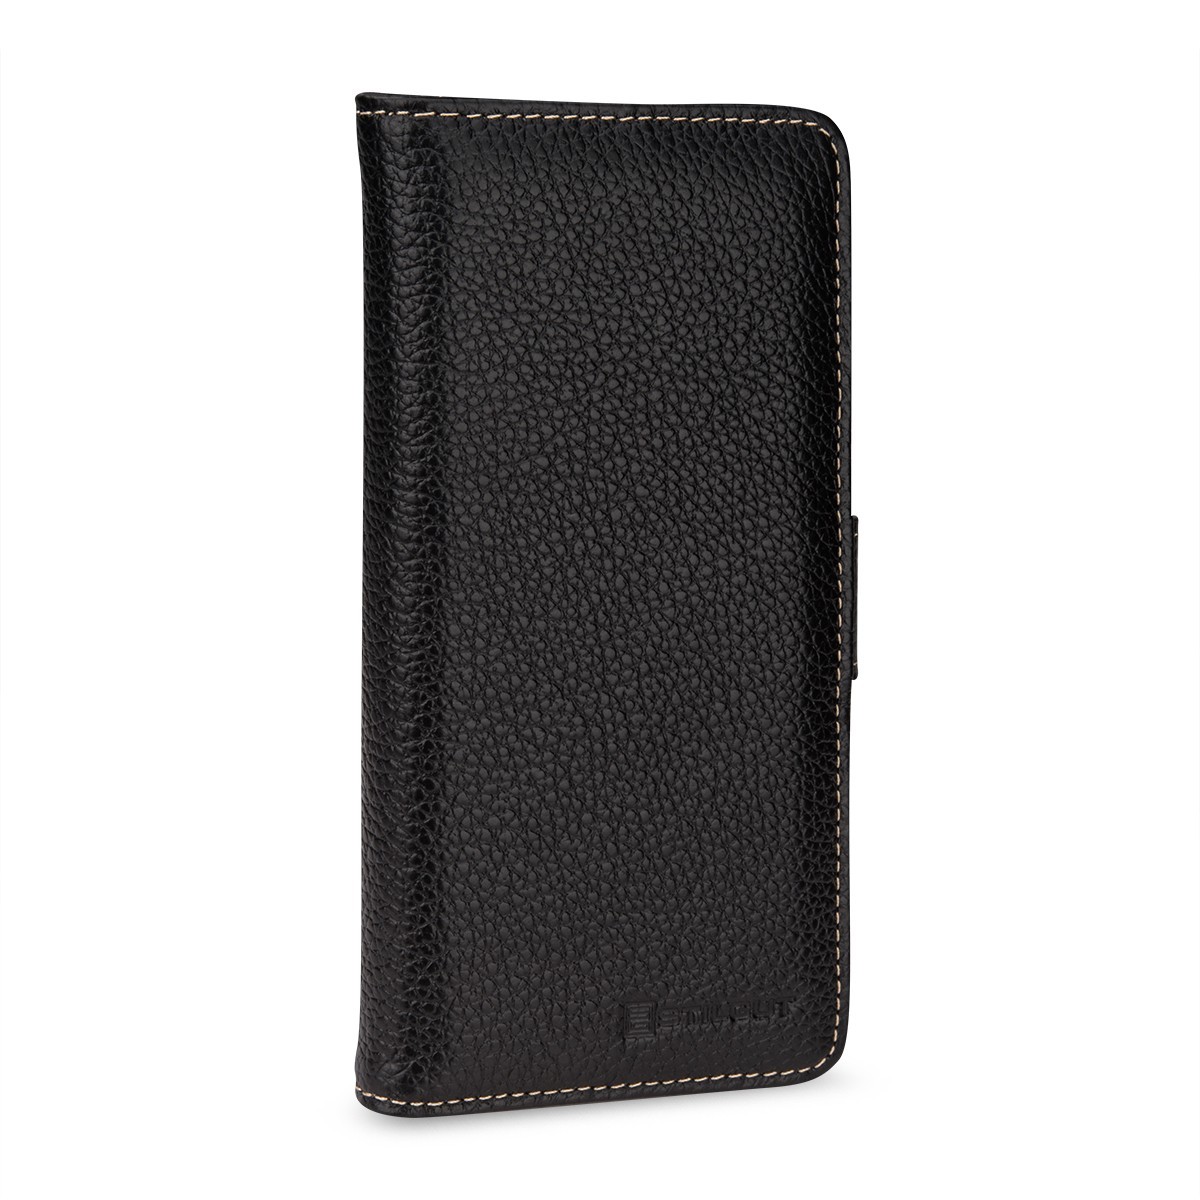 Etui Samsung S8 Plus Porte-cartes grainé noir en cuir véritable - Stilgut